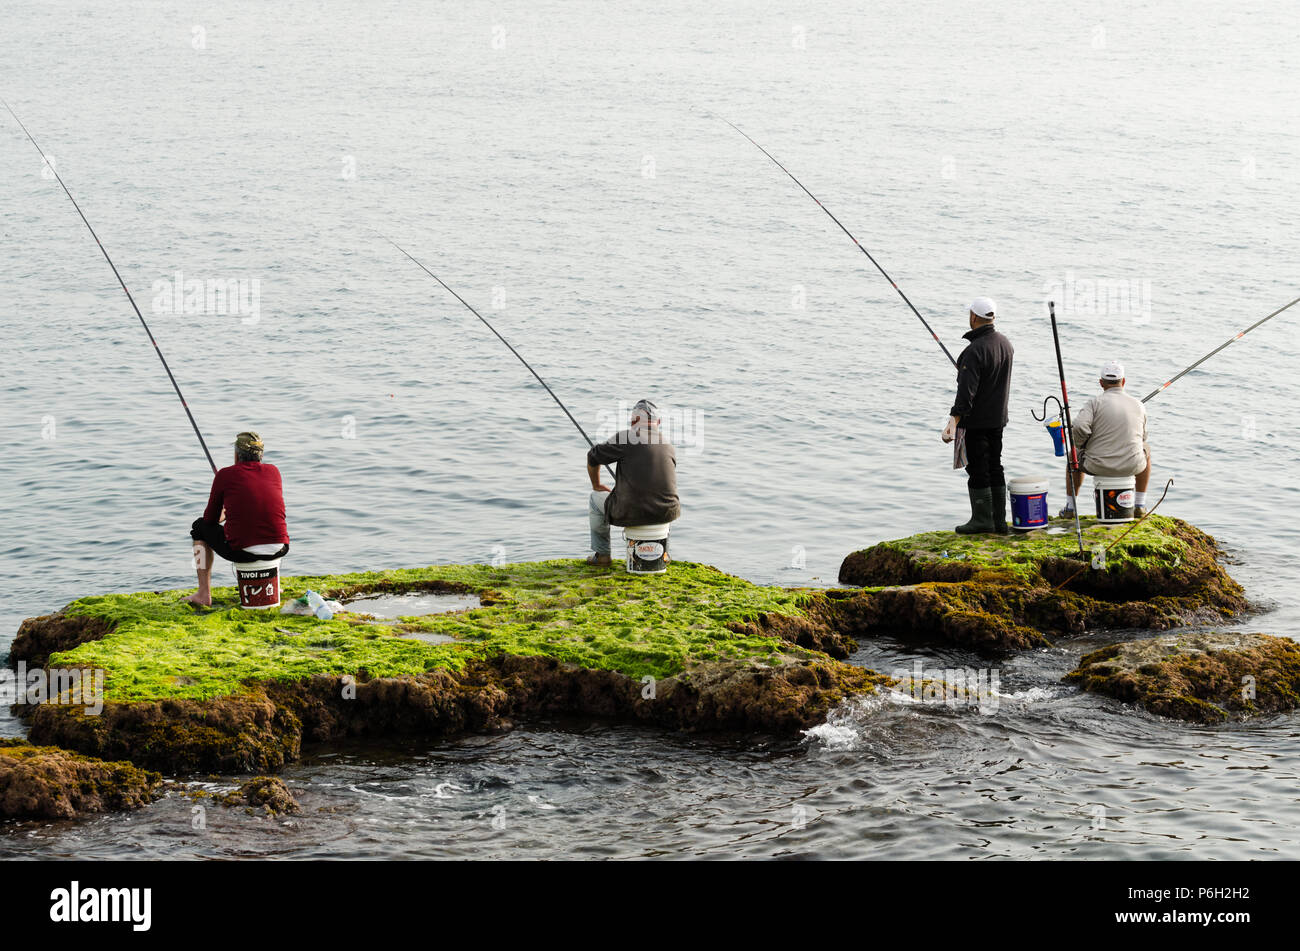 Les pêcheurs avec des cannes à pêche en attente d'une prise sur les rochers couverts d'algues dans l'eau, Byblos, Liban Banque D'Images